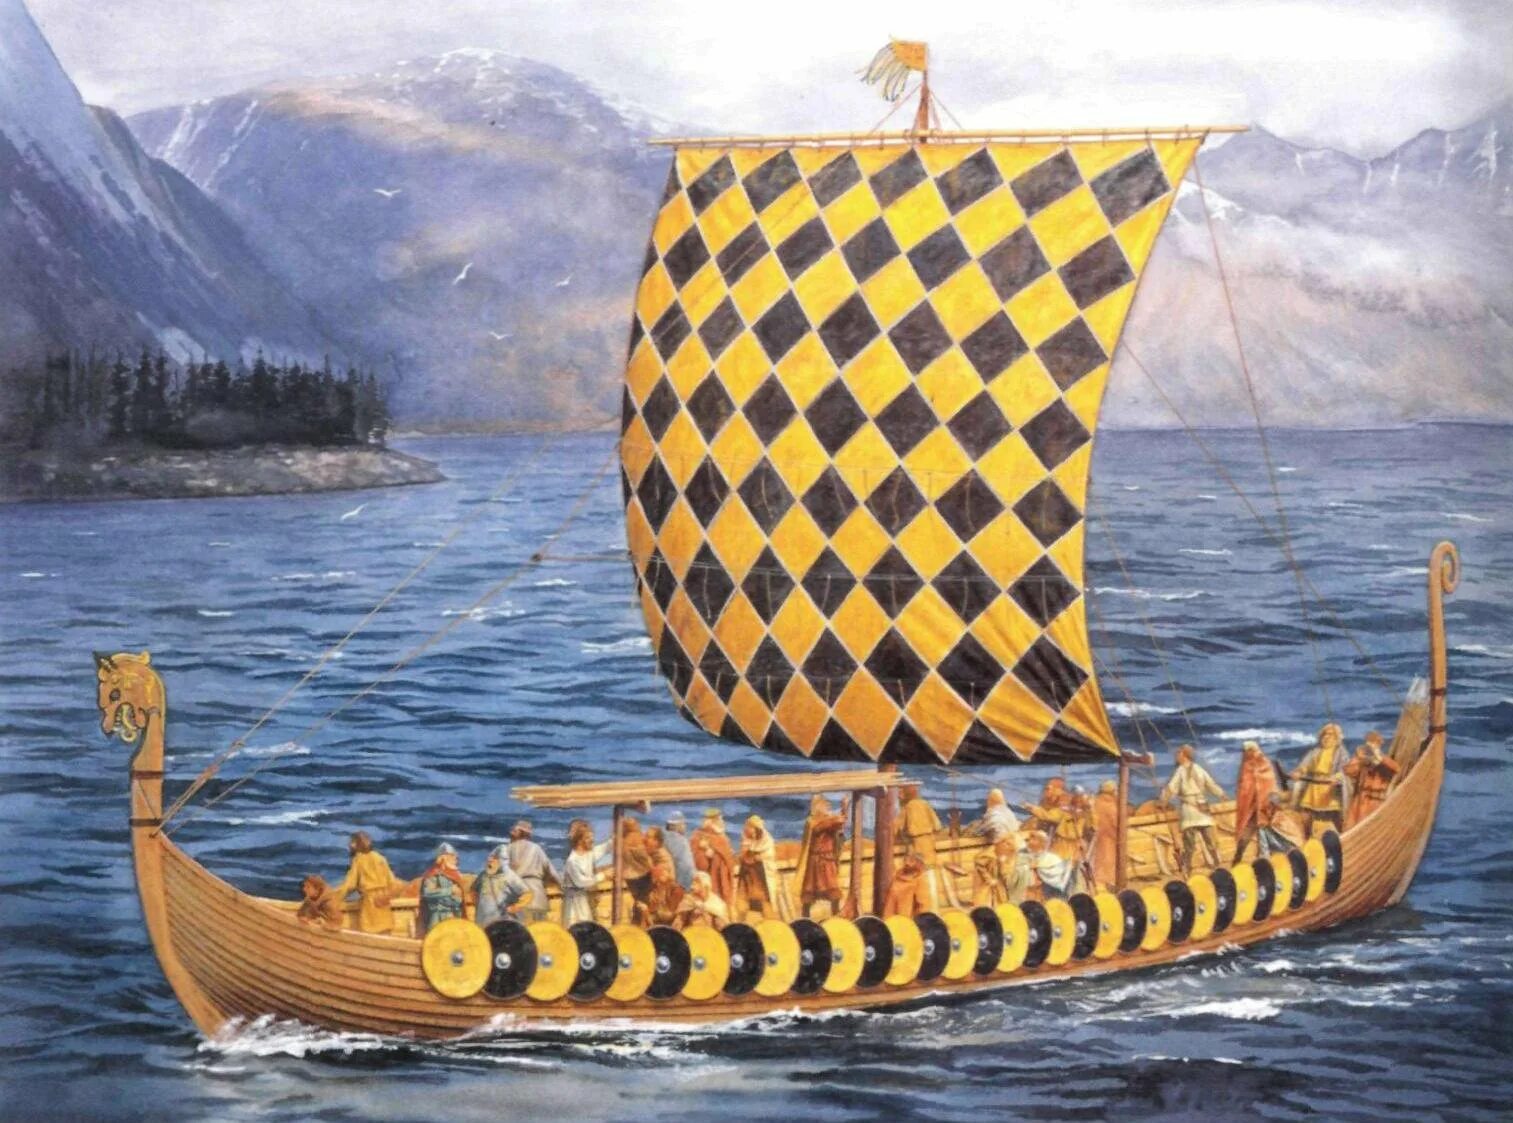 Ладья счет. Карви корабль викингов. Ладья викингов дракар. Гокштадский корабль (дракар). Корабль викингов Драккар 10 век.